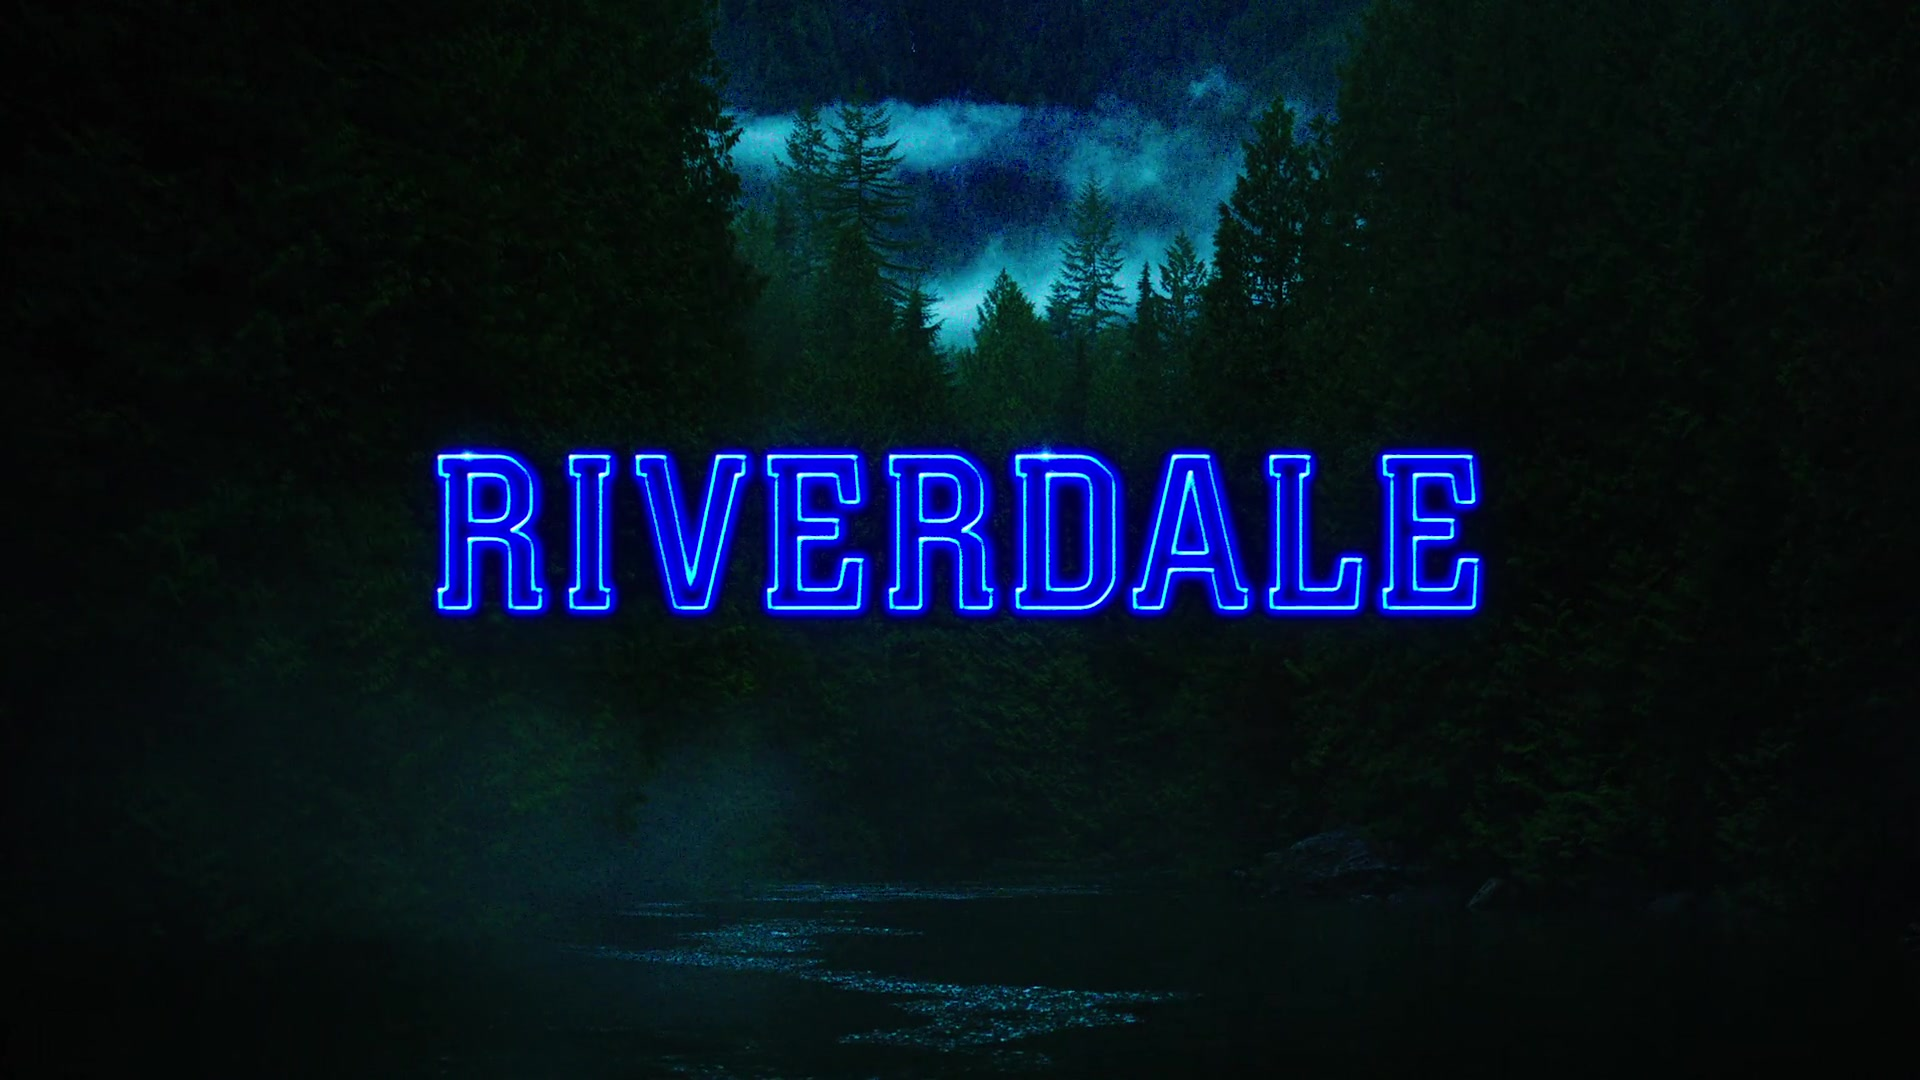 Season 6 (Riverdale)